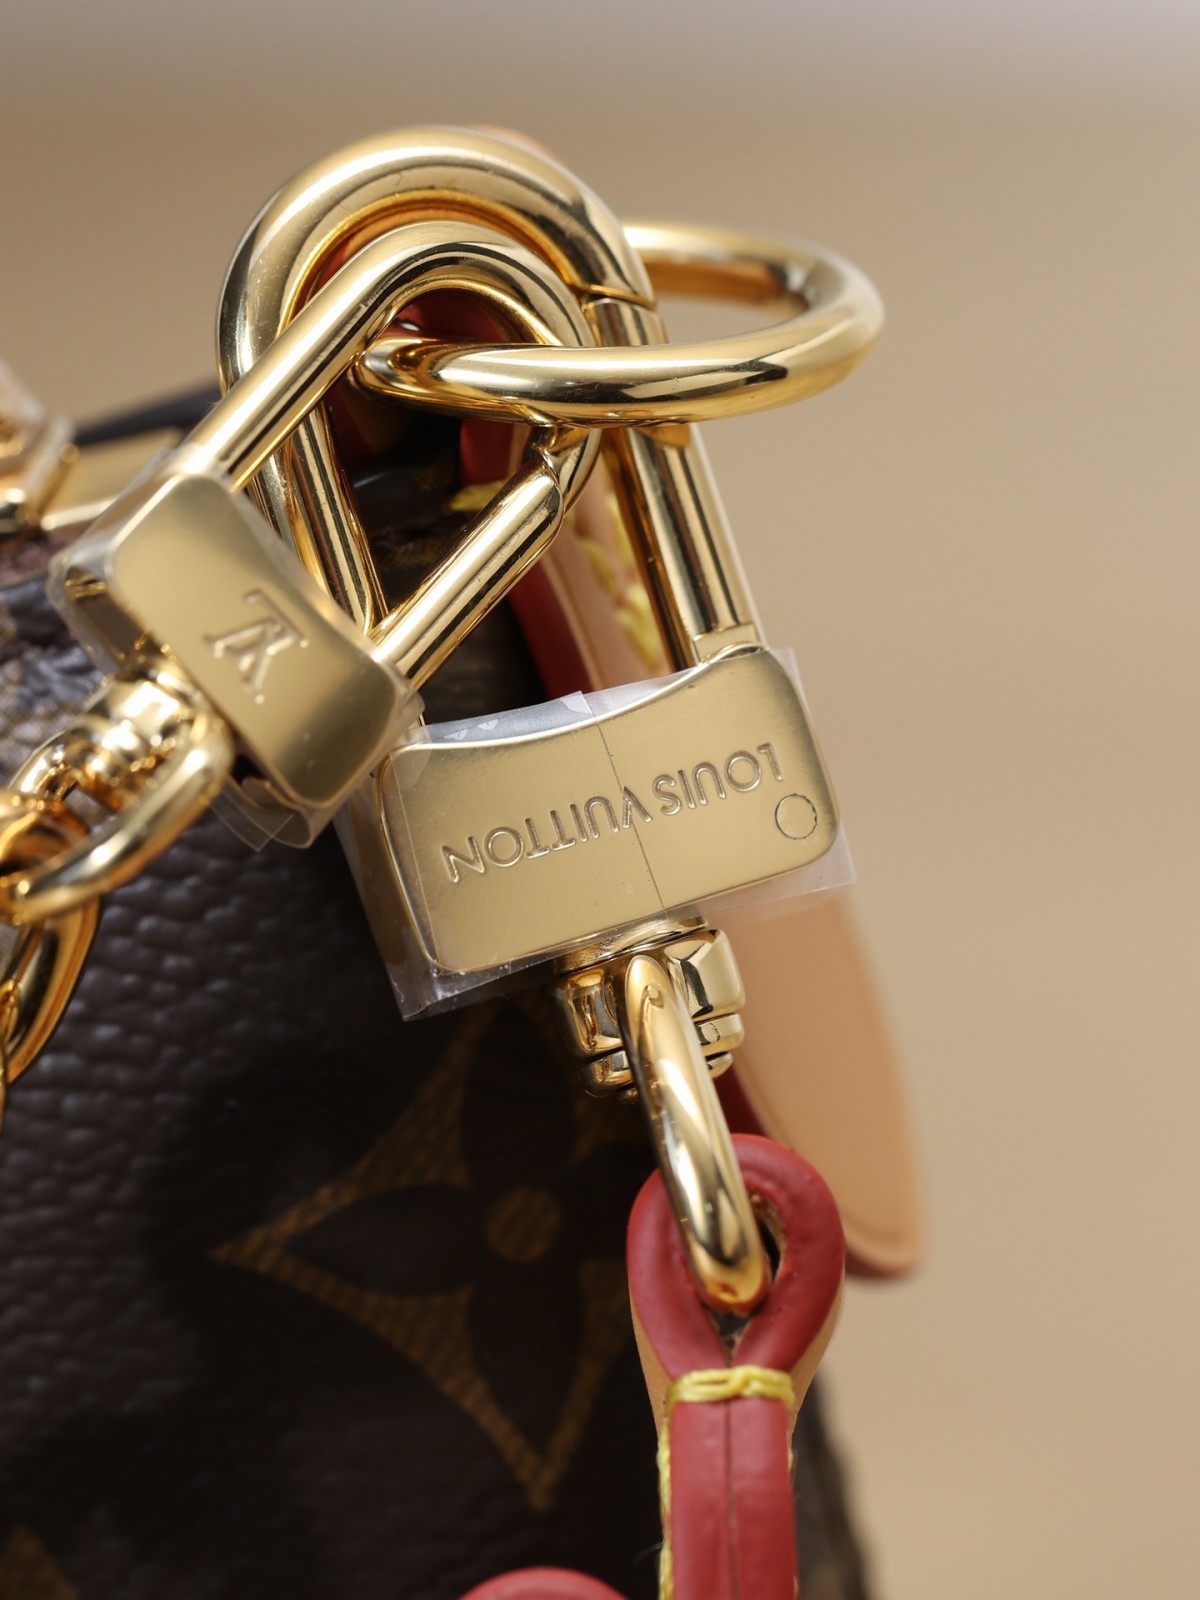 How good quality is a Shebag replica Louis Vuitton Boulogne bag? (2023 updated)-Dyqani në internet i çantave të rreme Louis Vuitton me cilësi më të mirë, çanta modeli kopje ru